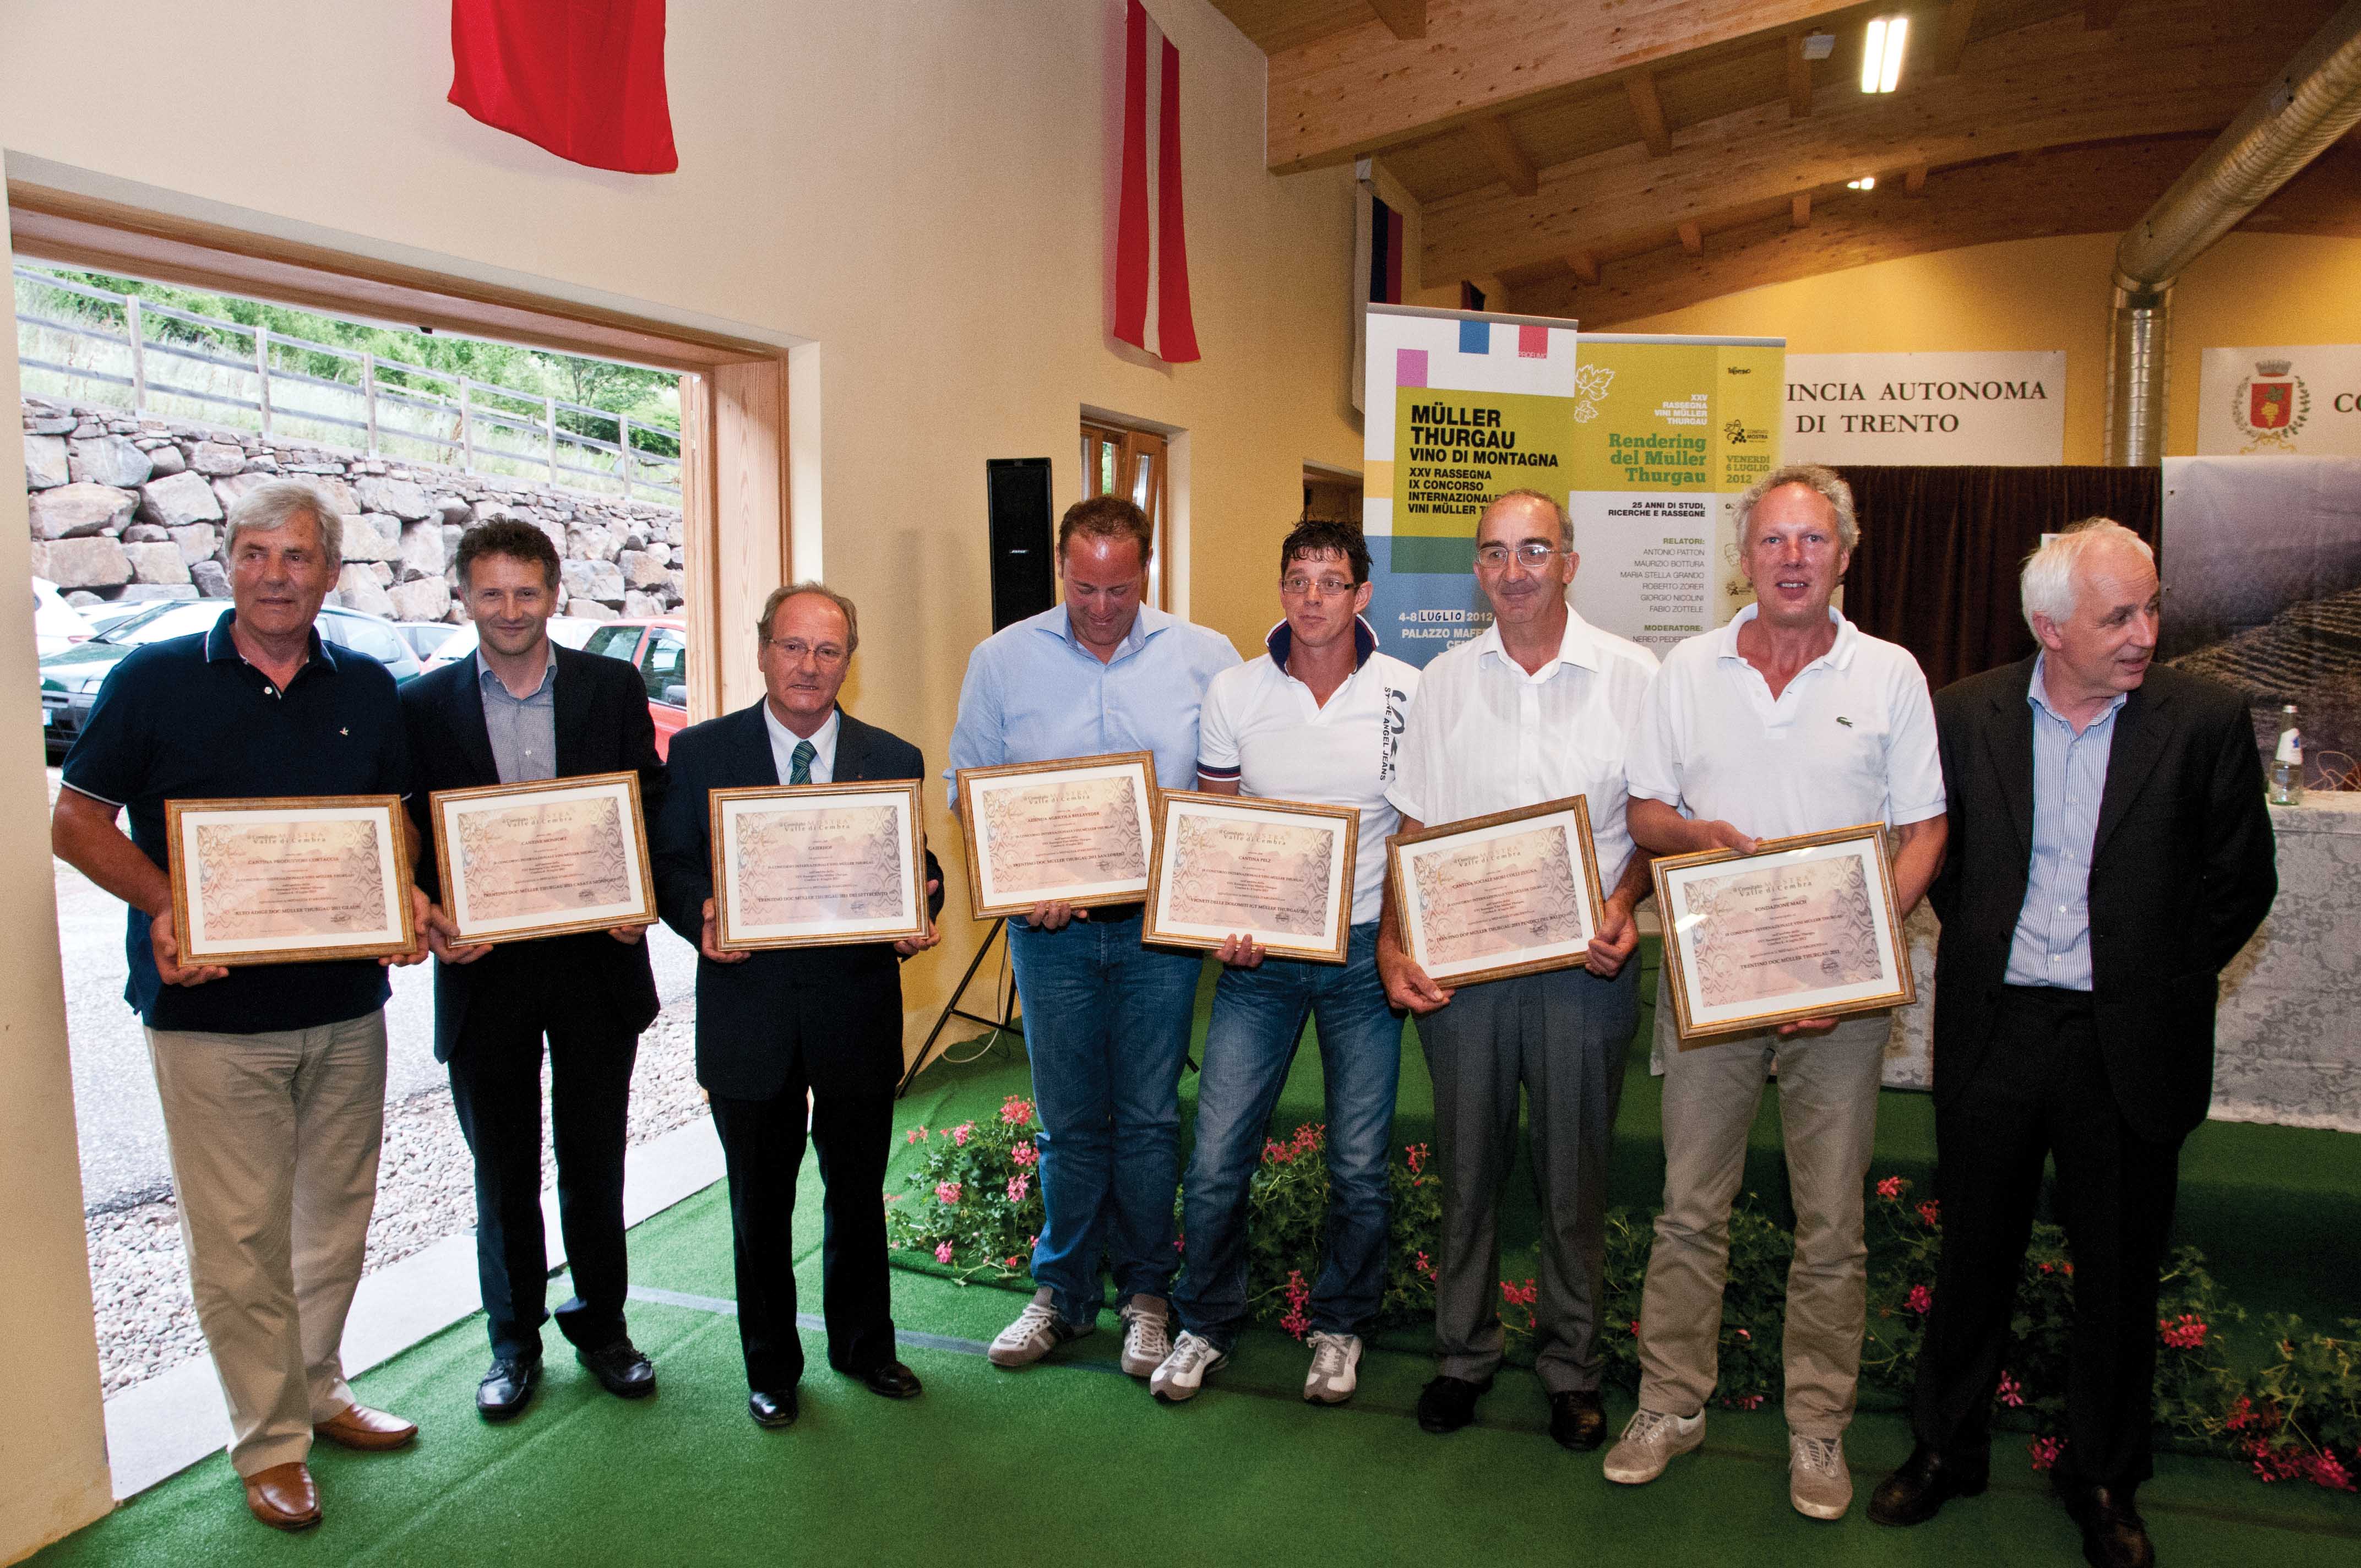 Mostra vini Muller Thurgau 2012 concorso premiazione argento premiati trentino alto adige 1